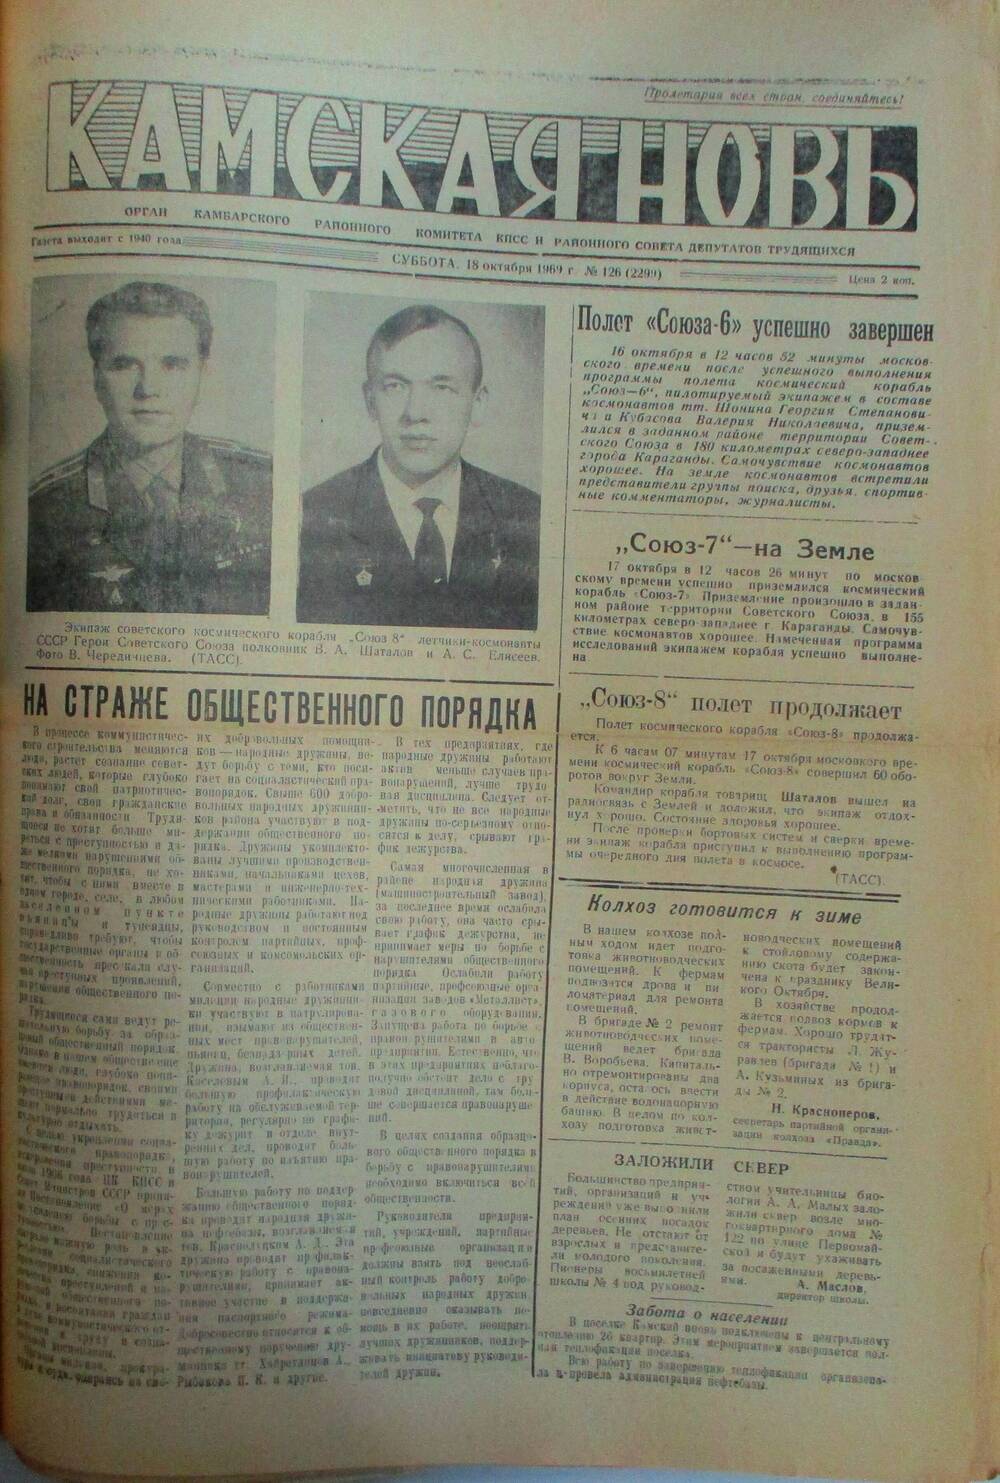 Газеты Камская новь за 1969 год, орган Камбарского райсовета и  РККПСС, с №1 по №66, с №68 по №156. №126.